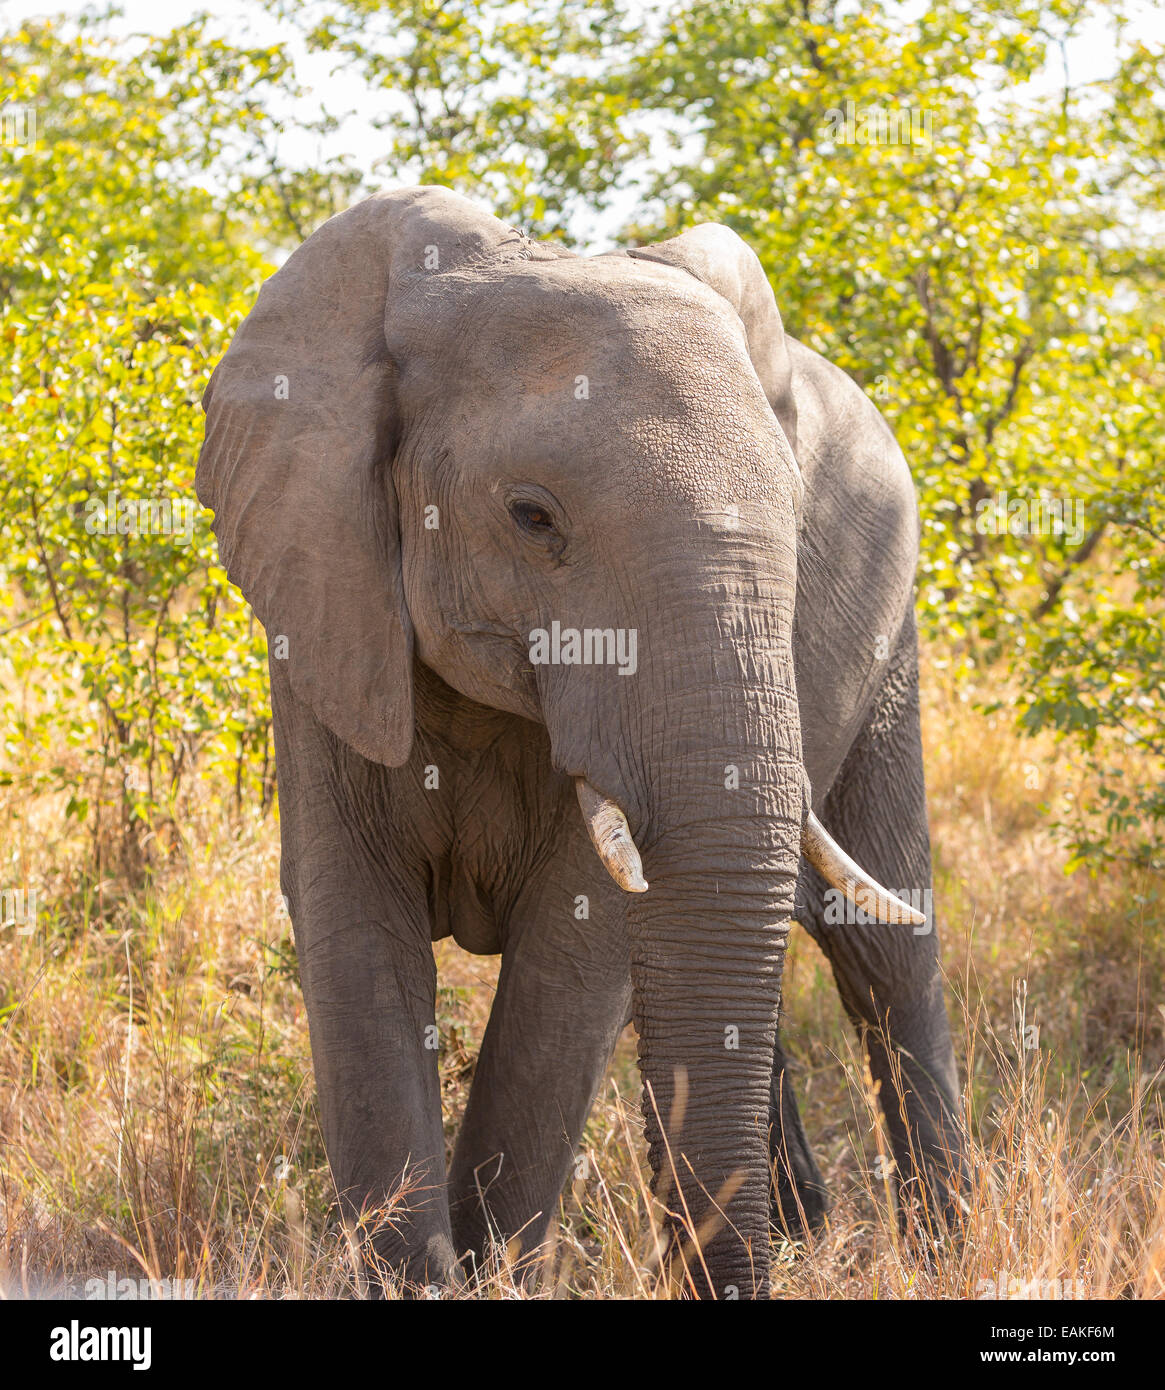 El Parque Nacional Kruger, Sudáfrica - El elefante africano. Foto de stock